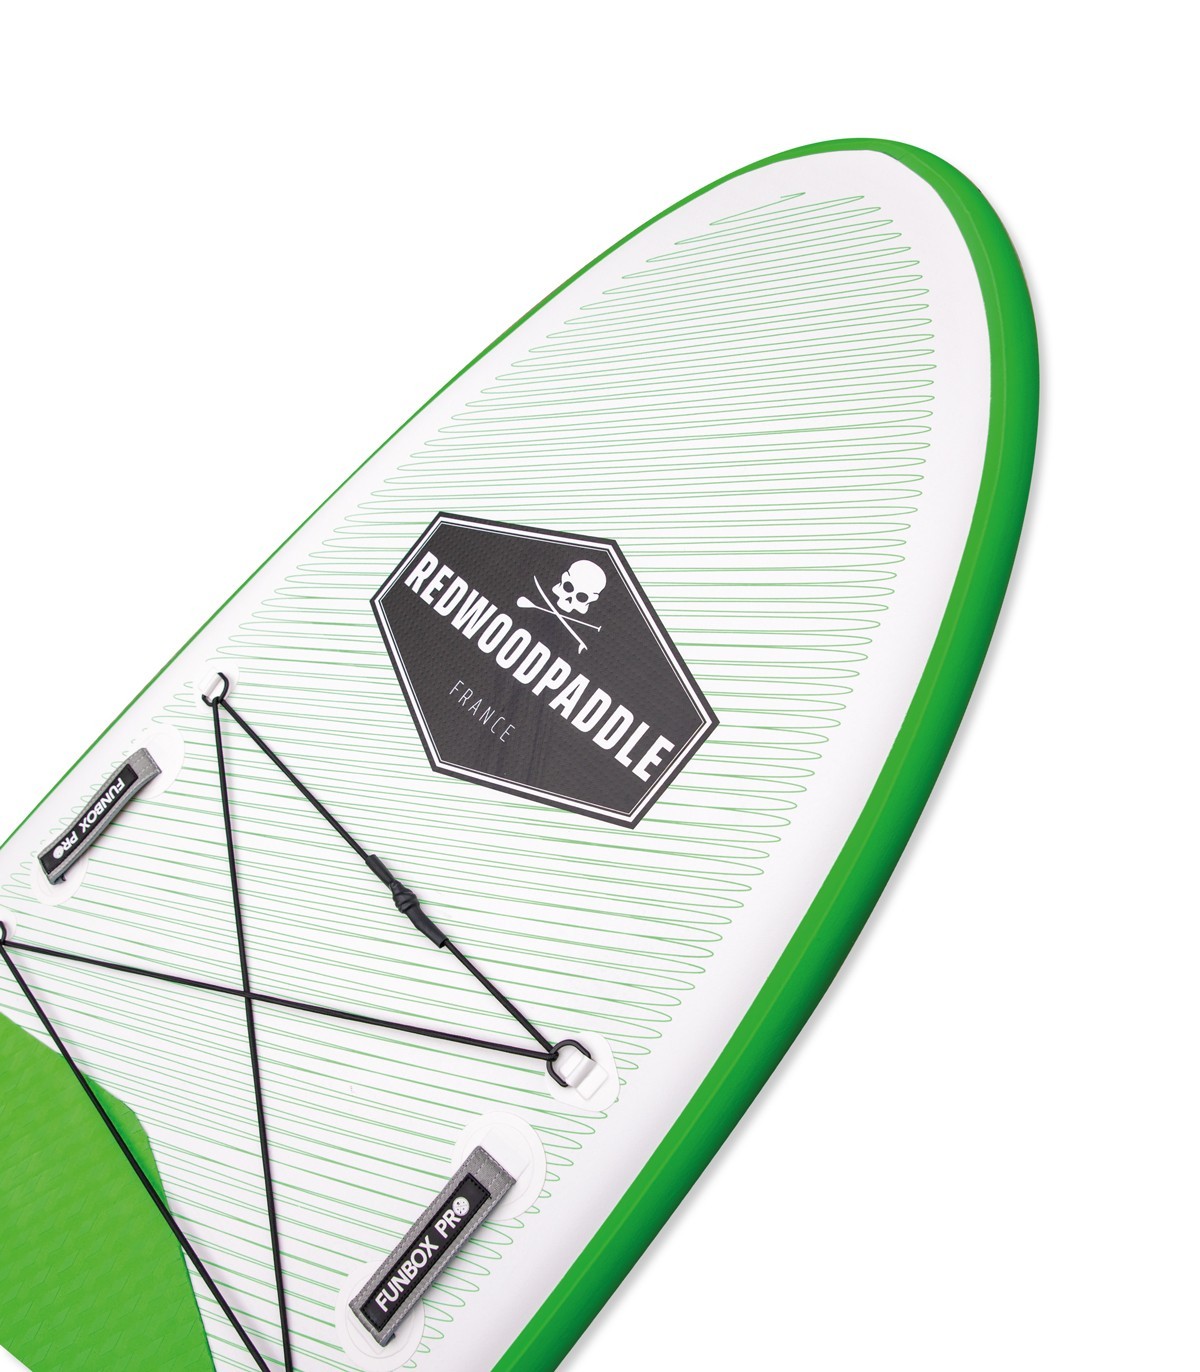 Tabla paddle surf hinchable avanzado 10